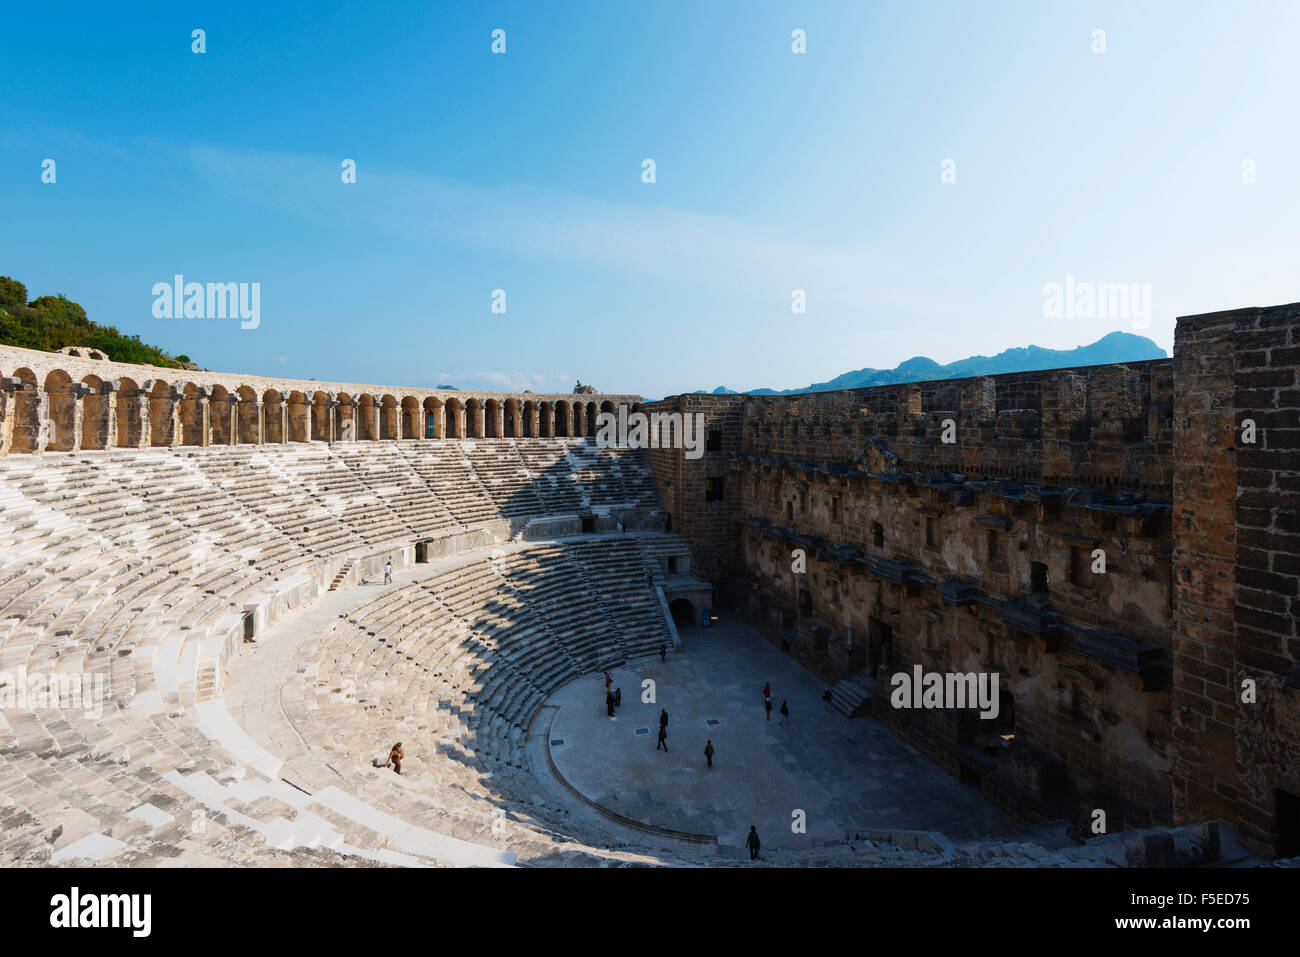 Im zweiten Jahrhundert römische Theater, erbaut von Kaiser Marcus Aurelius, Aspendos, Pamphylien, Anatolien, Türkei, Asien, Eurasien Stockfoto